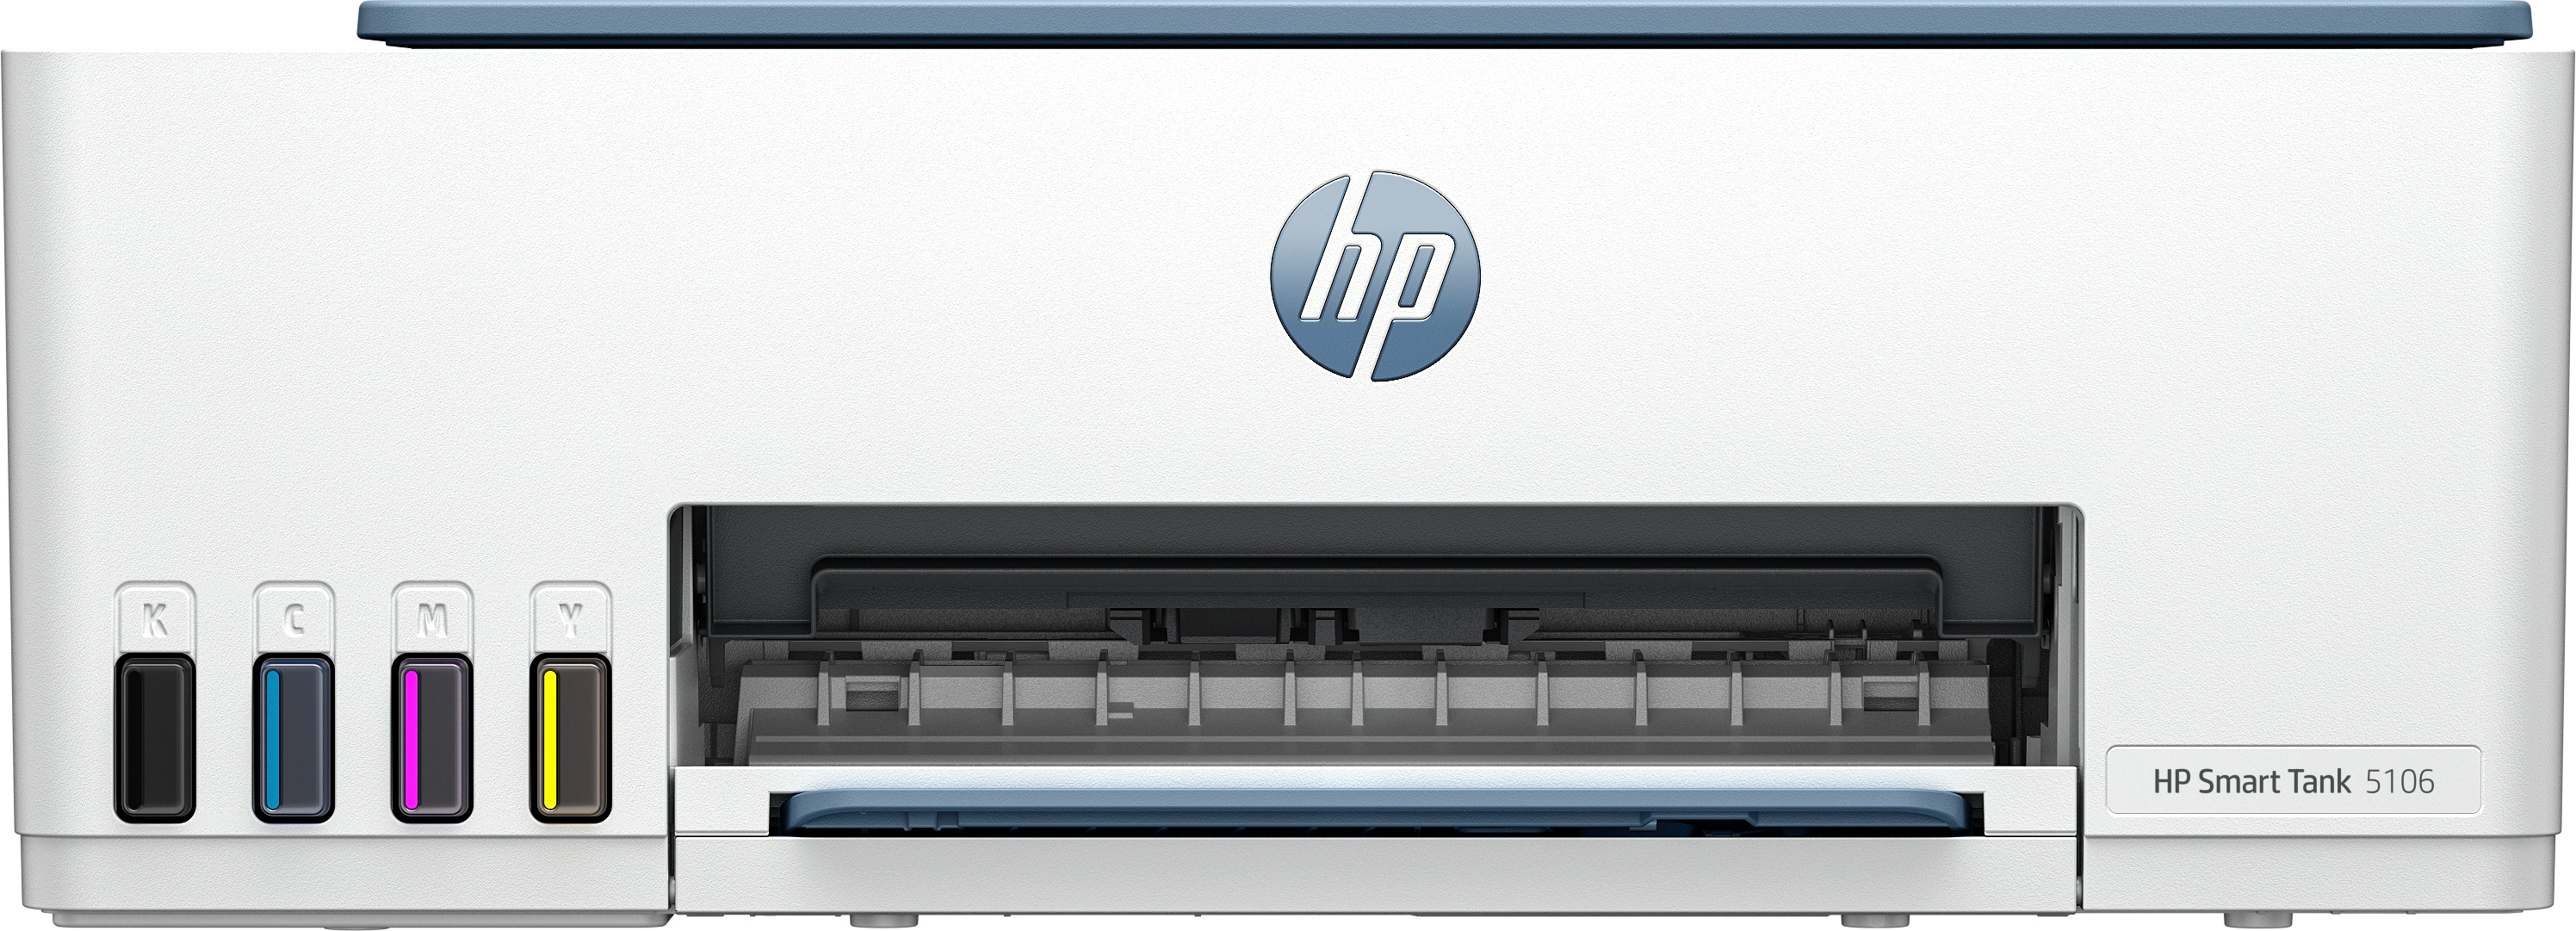 HP HP Smart Tank 5106 All-in-One-printer, Kleur, Printer voor Thuis en thuiskantoor, Printen, kopi&#235;ren, scannen, Draadloos; printertank voor grote volumes; printen vanaf telefoon of tablet; scannen naar pdf